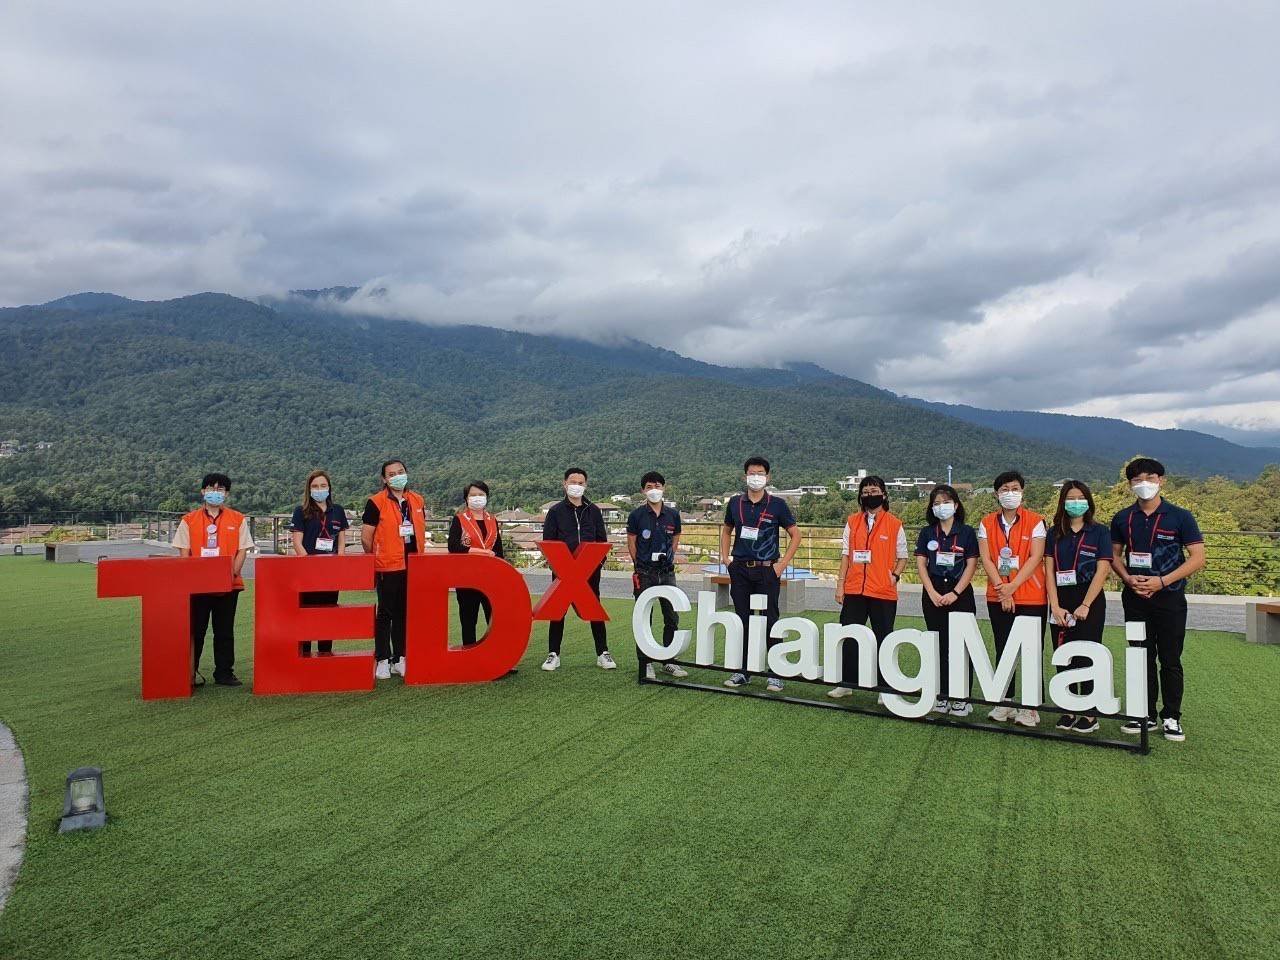 อพวช. ร่วมกับ สดร. สนับสนุนการจัดงาน TEDxChiangMai 2021 